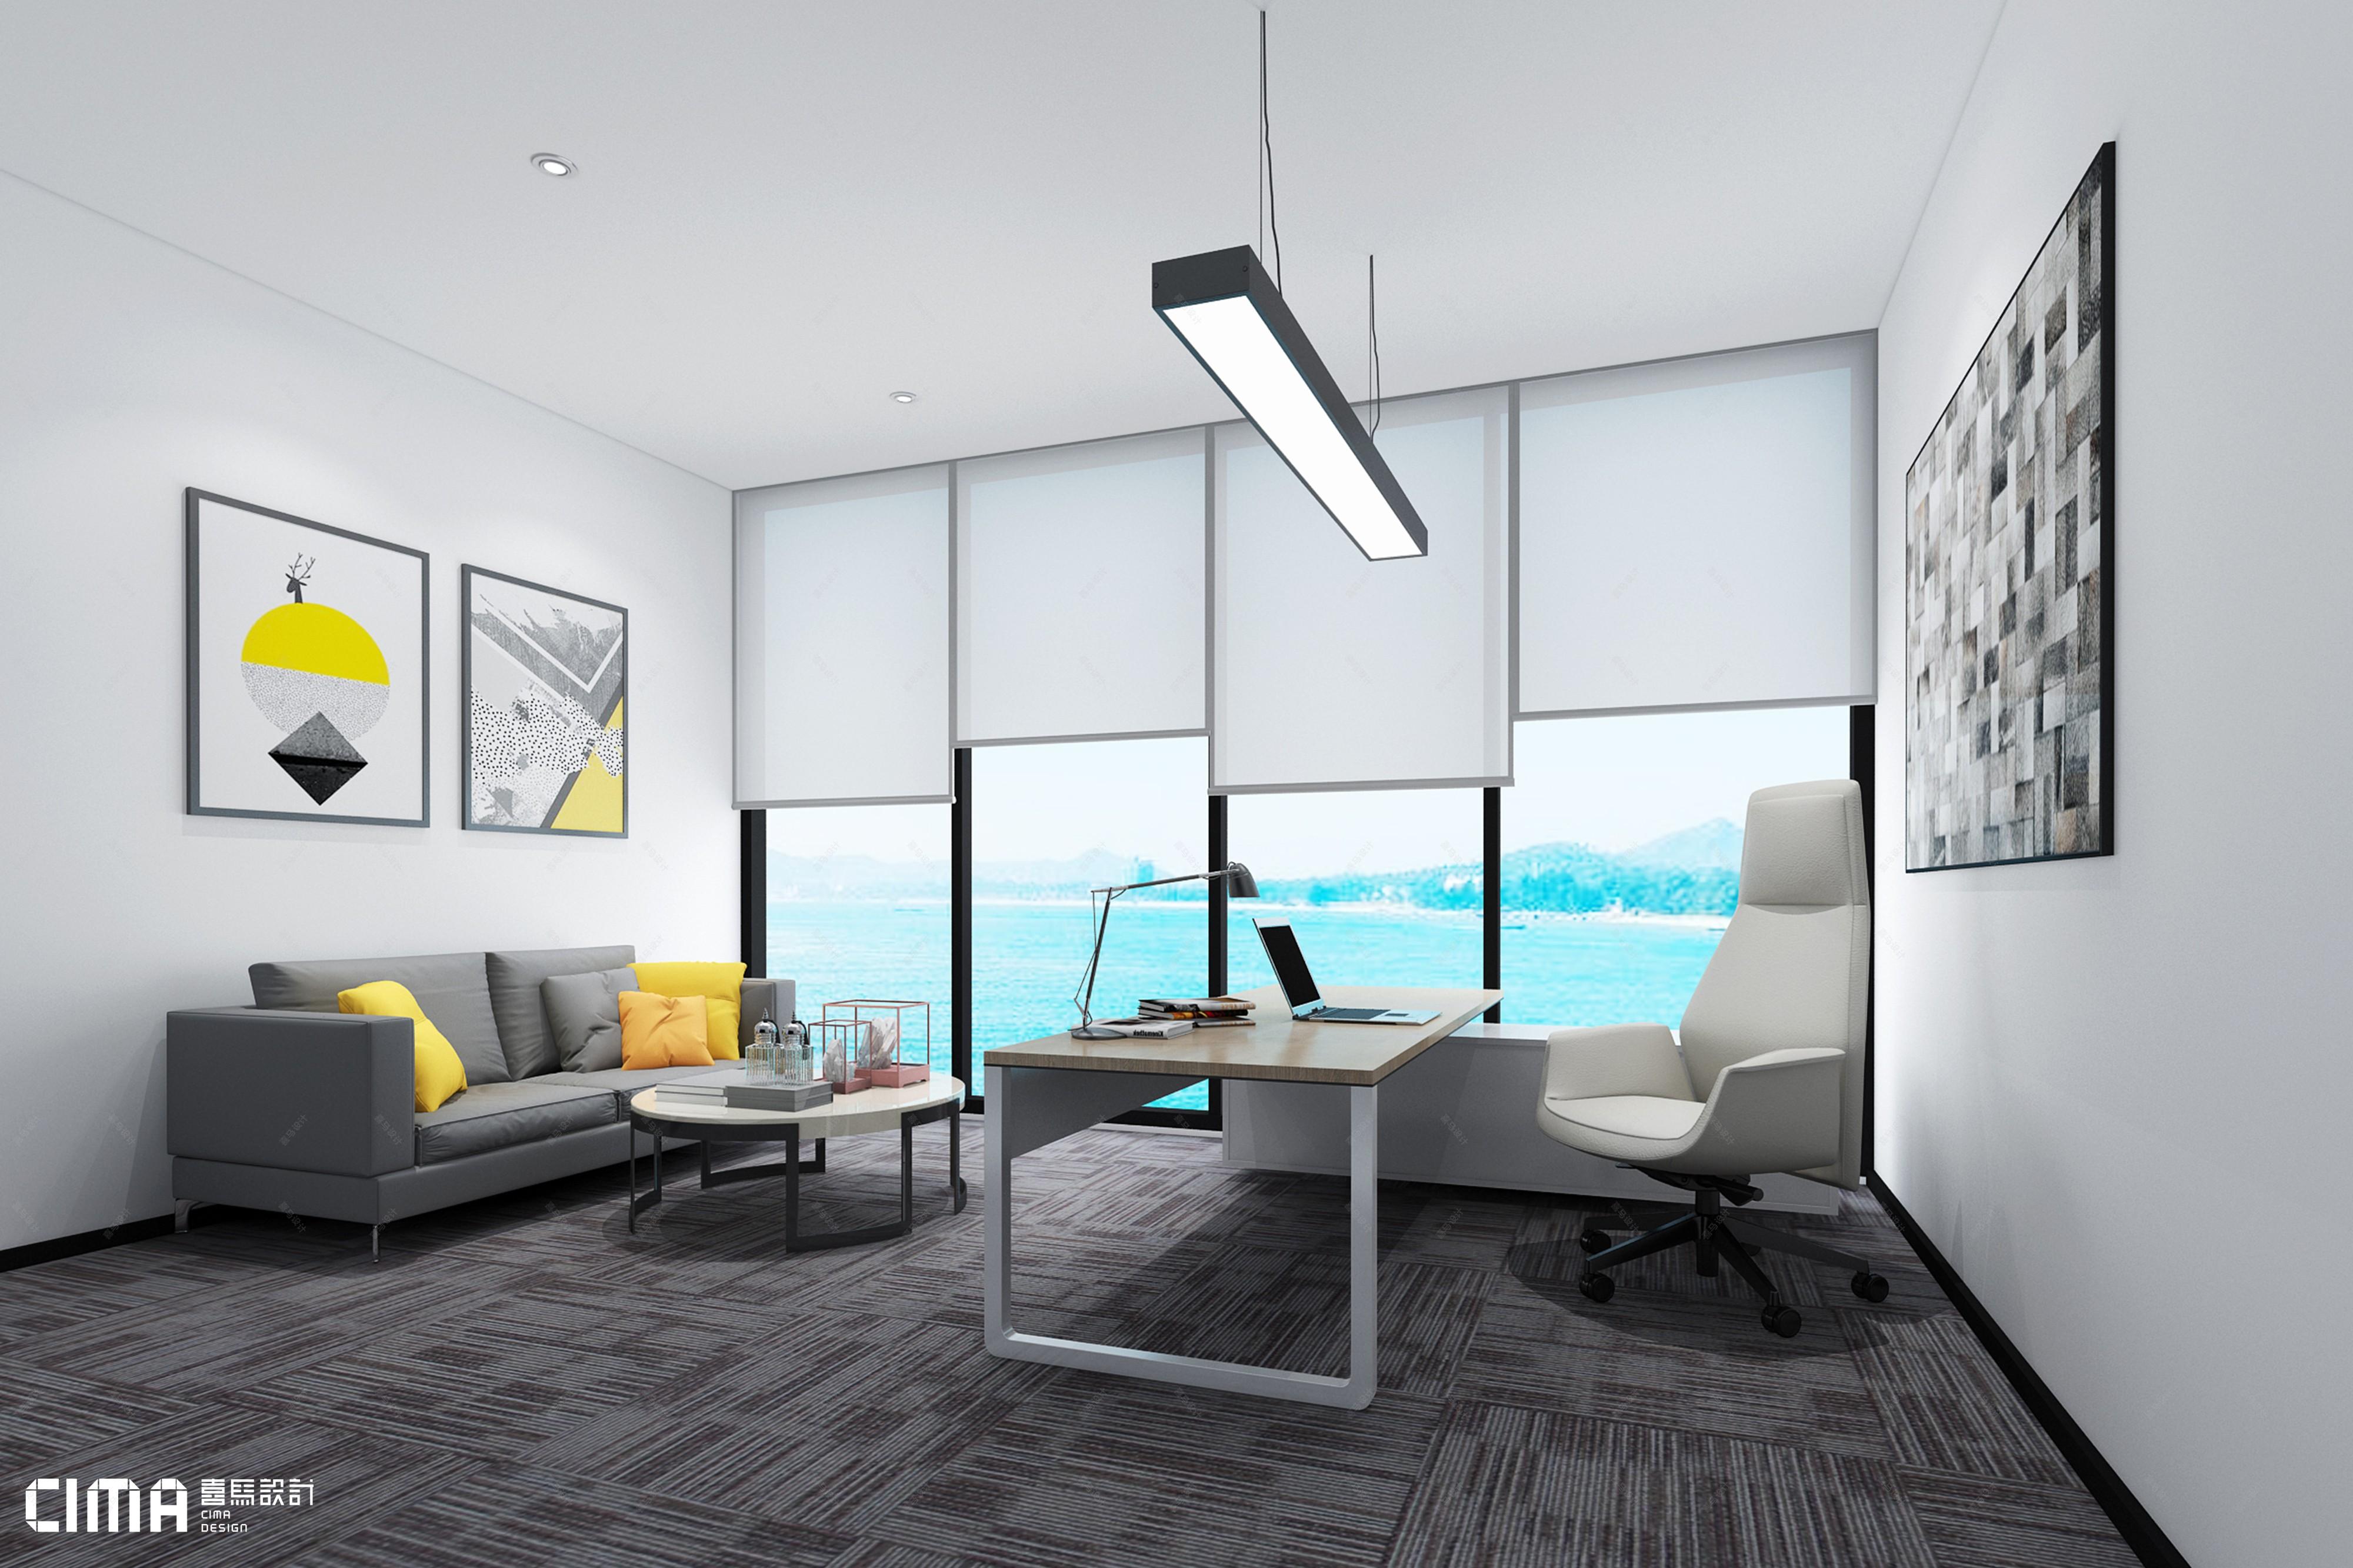 小型办公室小而明亮温暖,素灰色里点缀暖色让空间不会沉闷,显得活力而